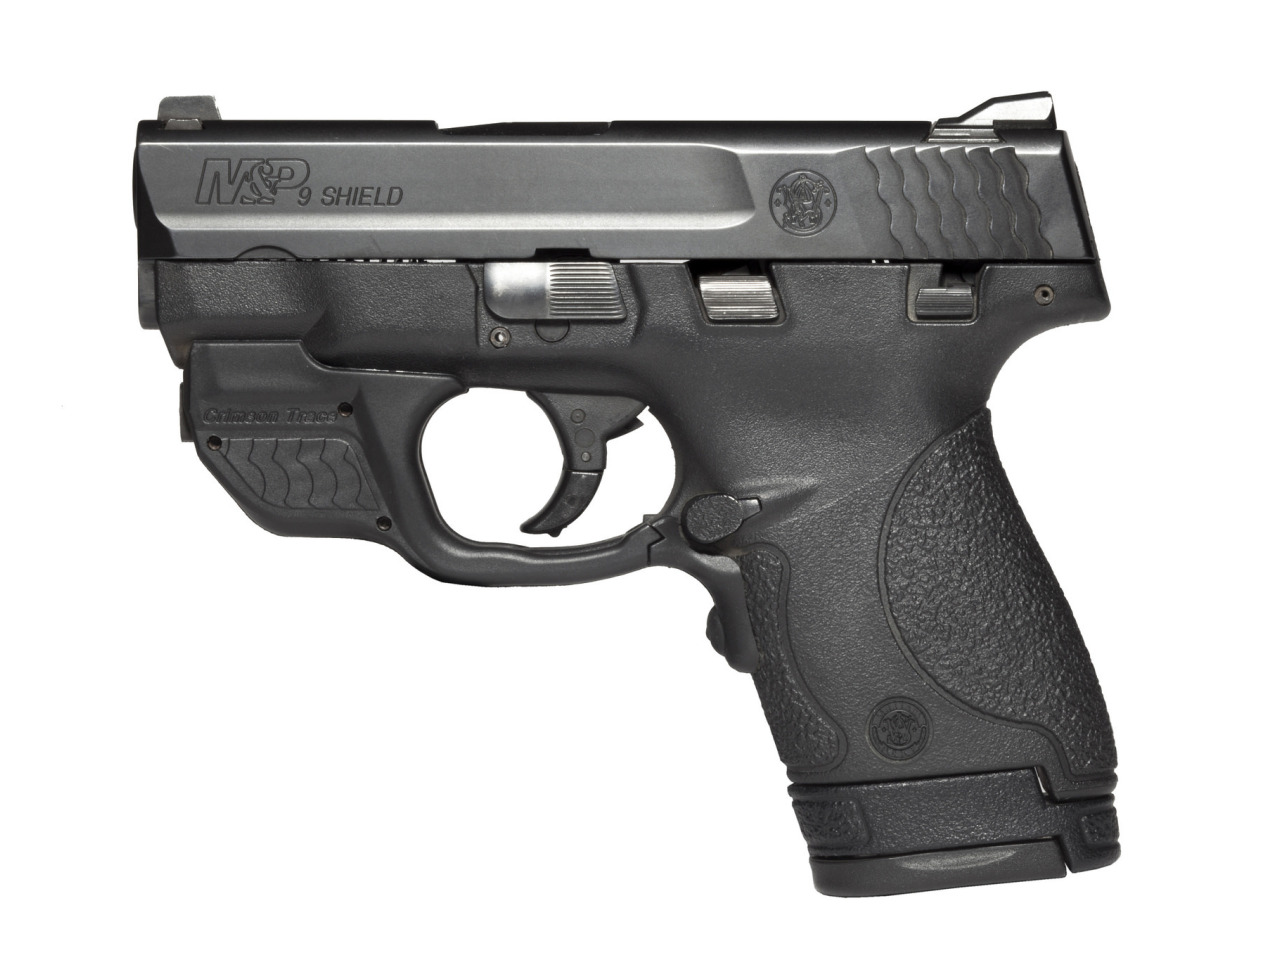 Nine shield. Smith & Wesson m&p overhauled by ed Brown. 9mm обои. 9mm обои ФОНК.